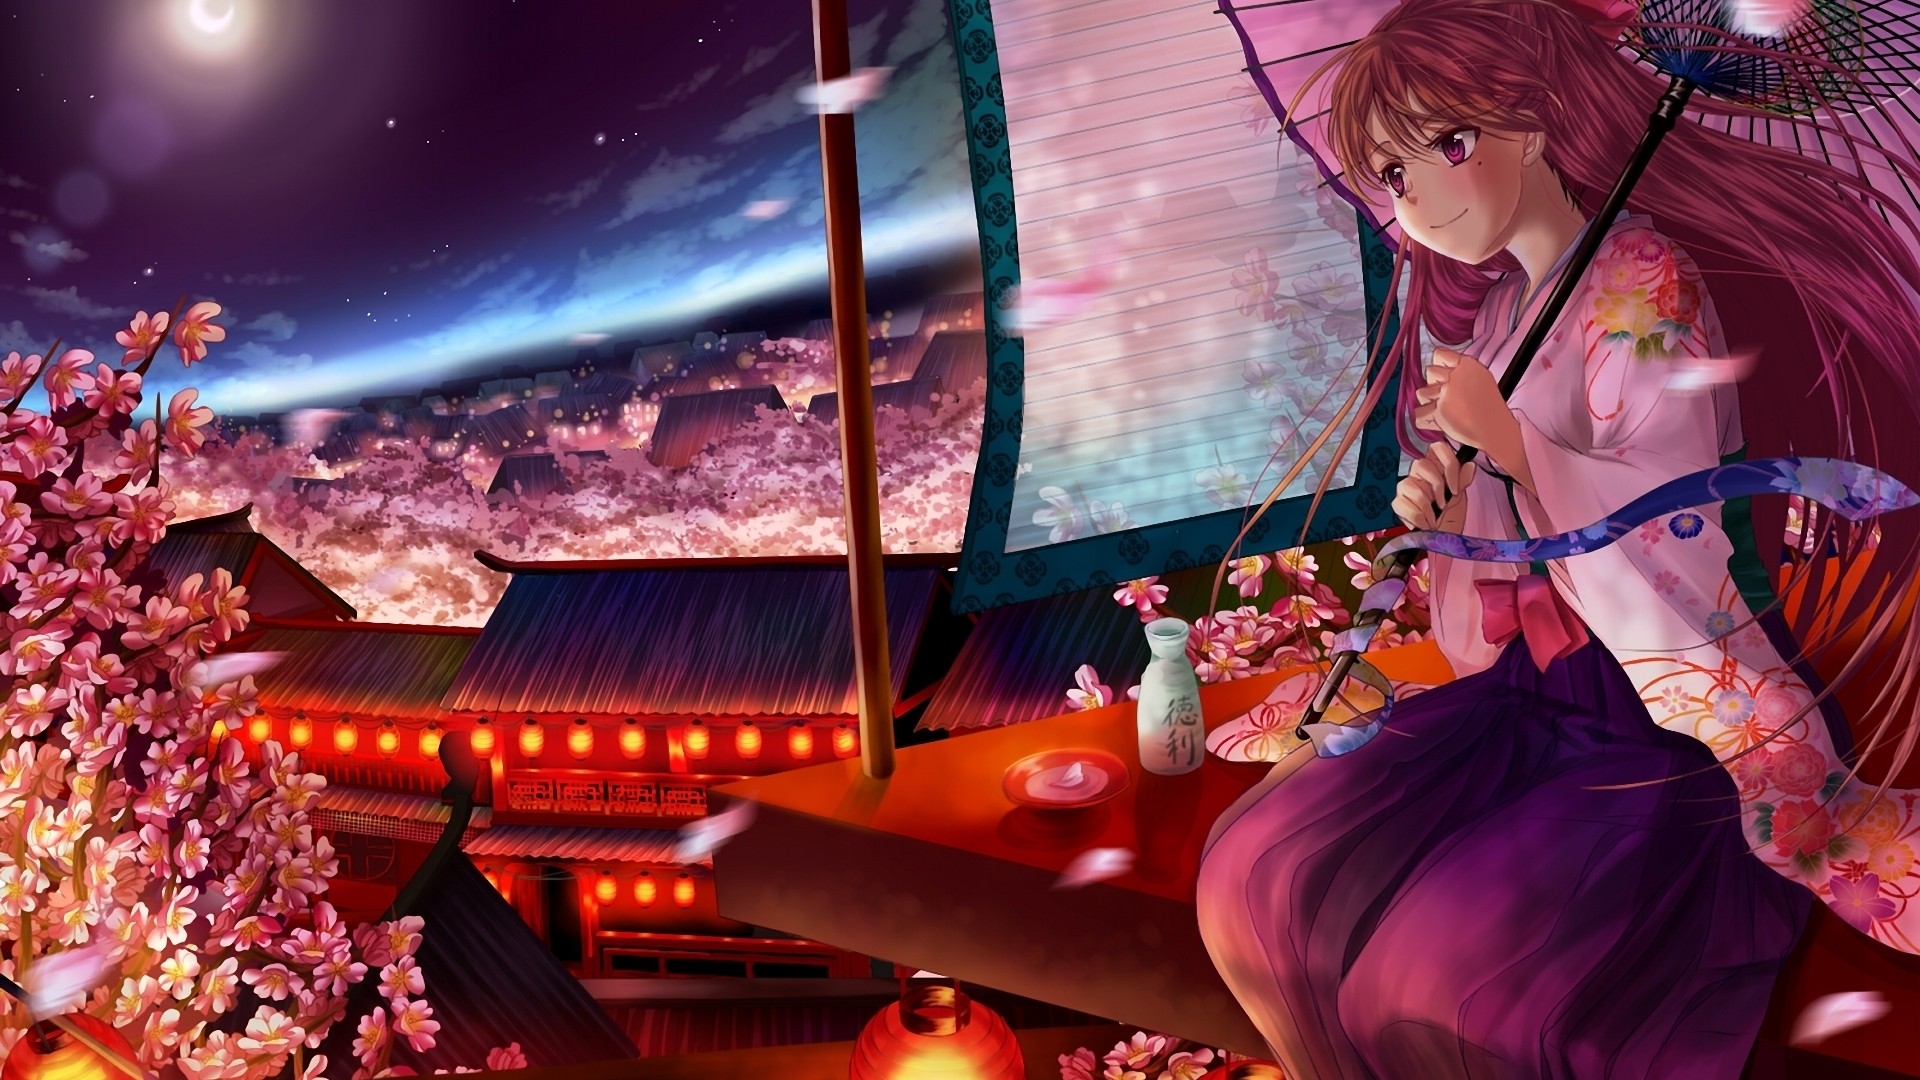 Anime 1920x1080 anime anime girls fantasy girl sitting flowers night sky fantasy art umbrella long hair